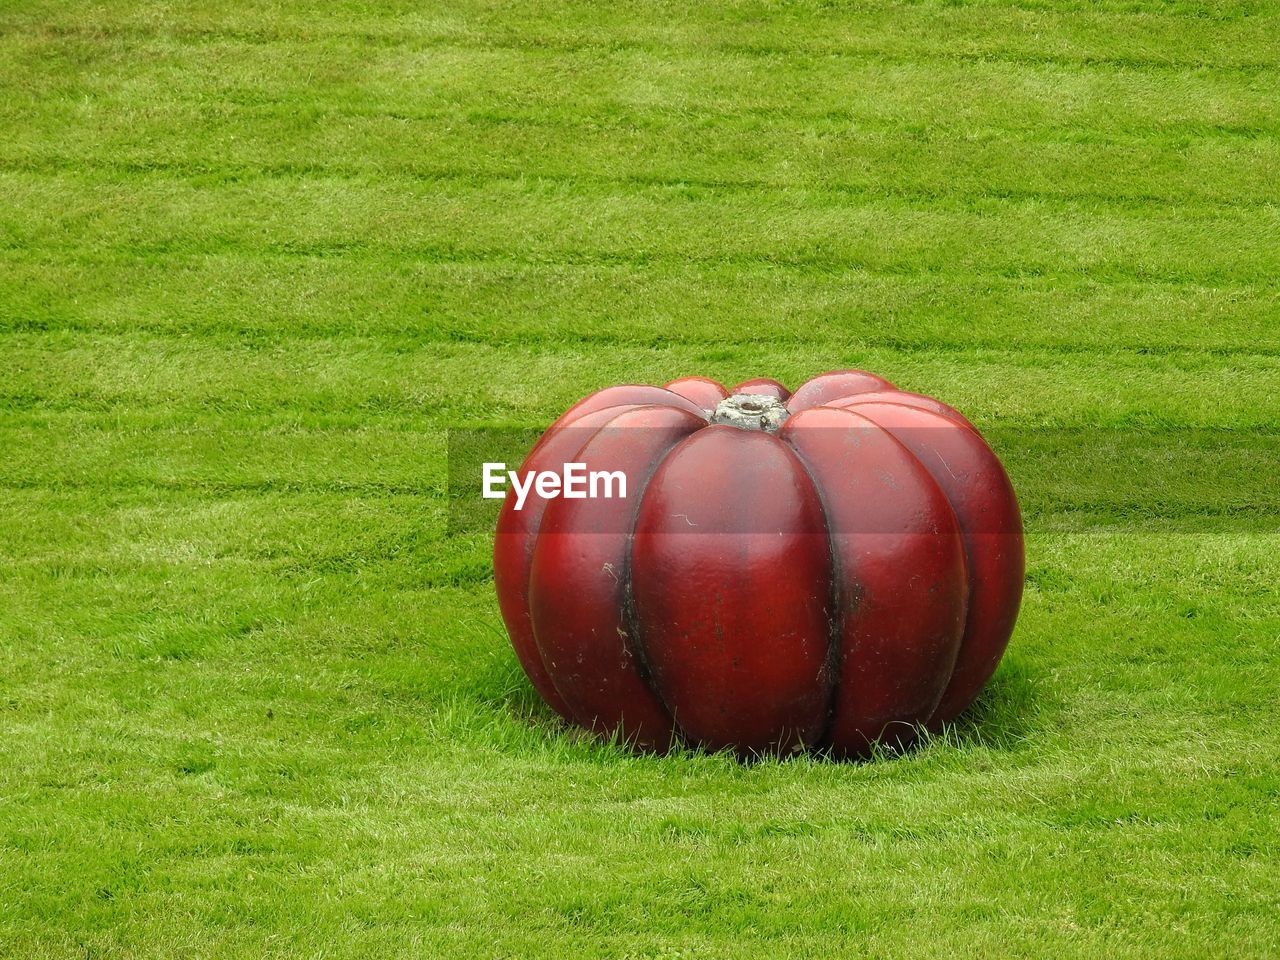 Sculpture of a red pumpkin on the grass